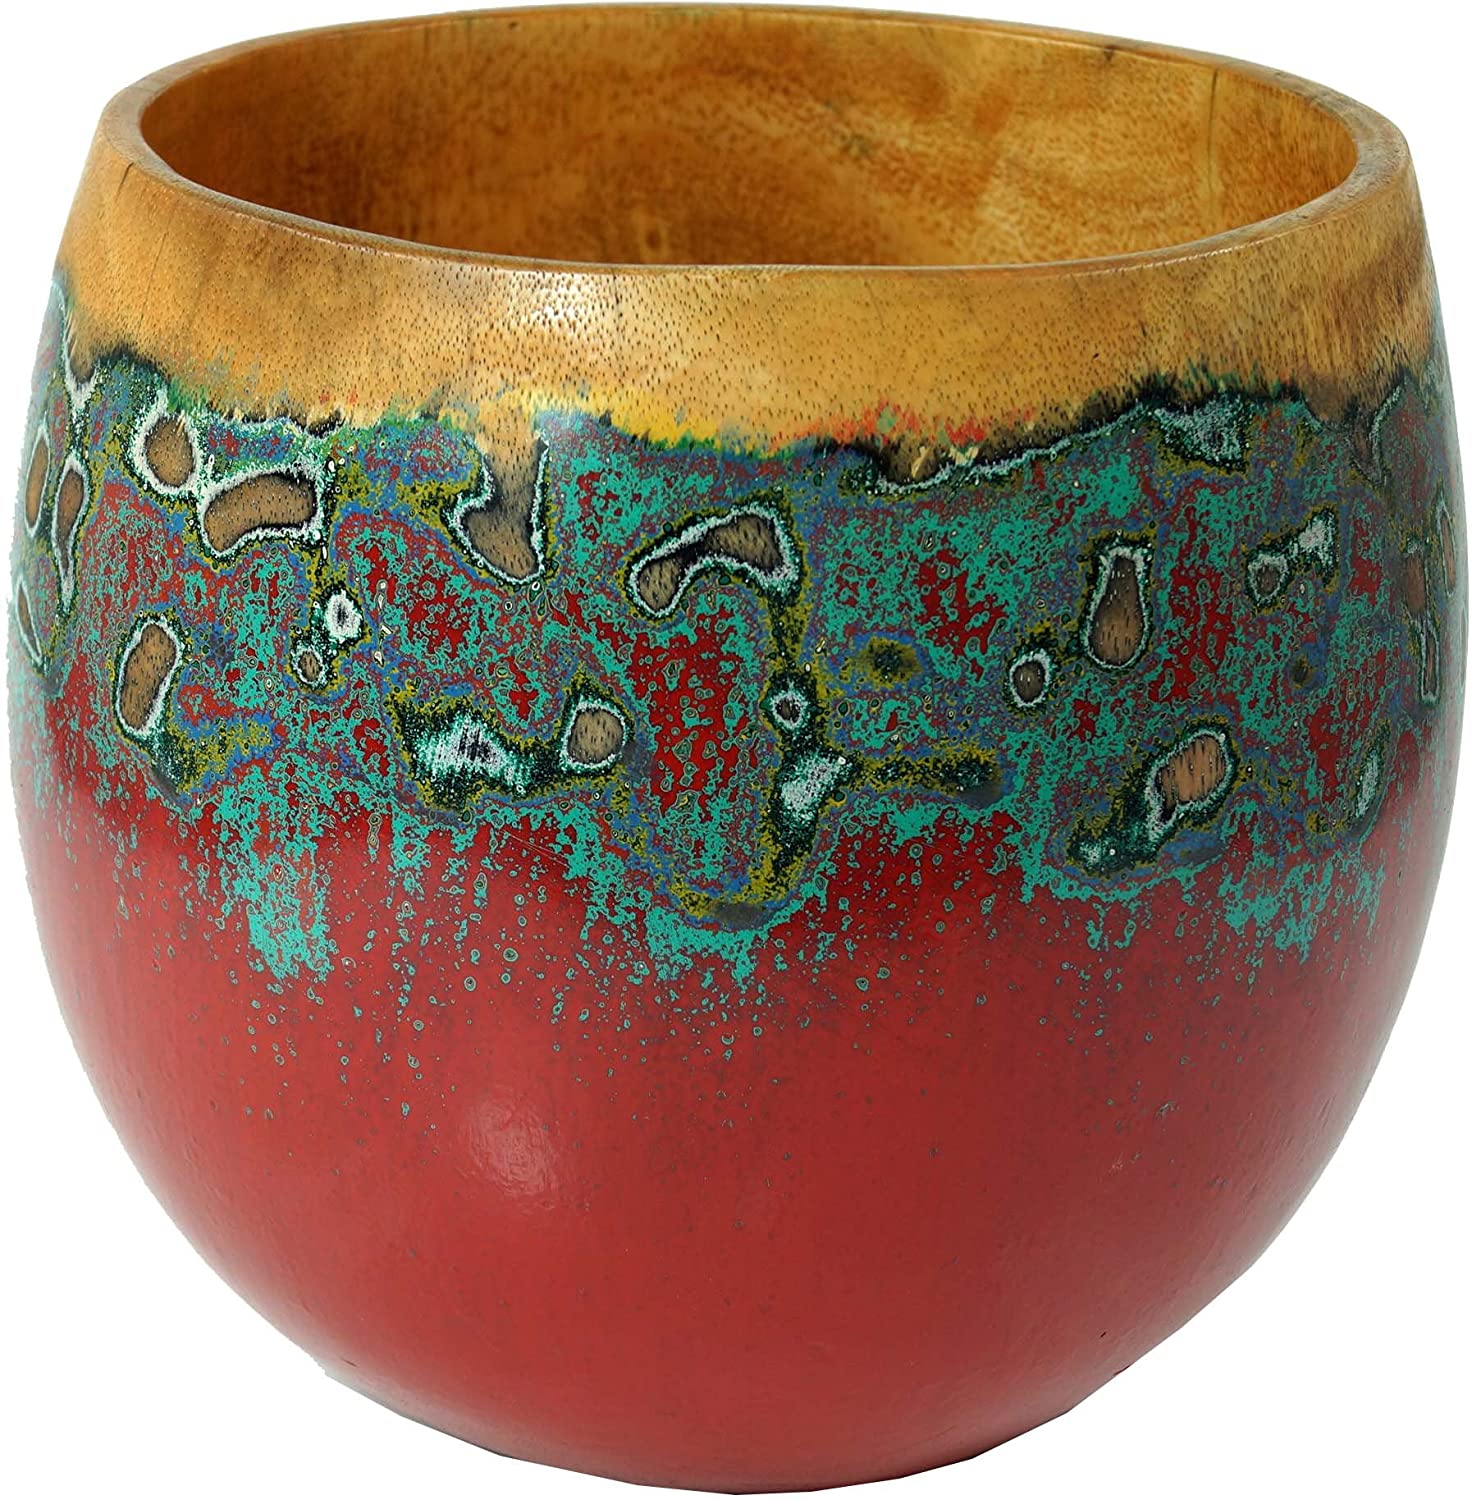 Guru-Shop Flower Pot, Wooden Bowl Made of Palm Wood, Design 8, Brown, 28 x 20 x 20 cm, Bowls